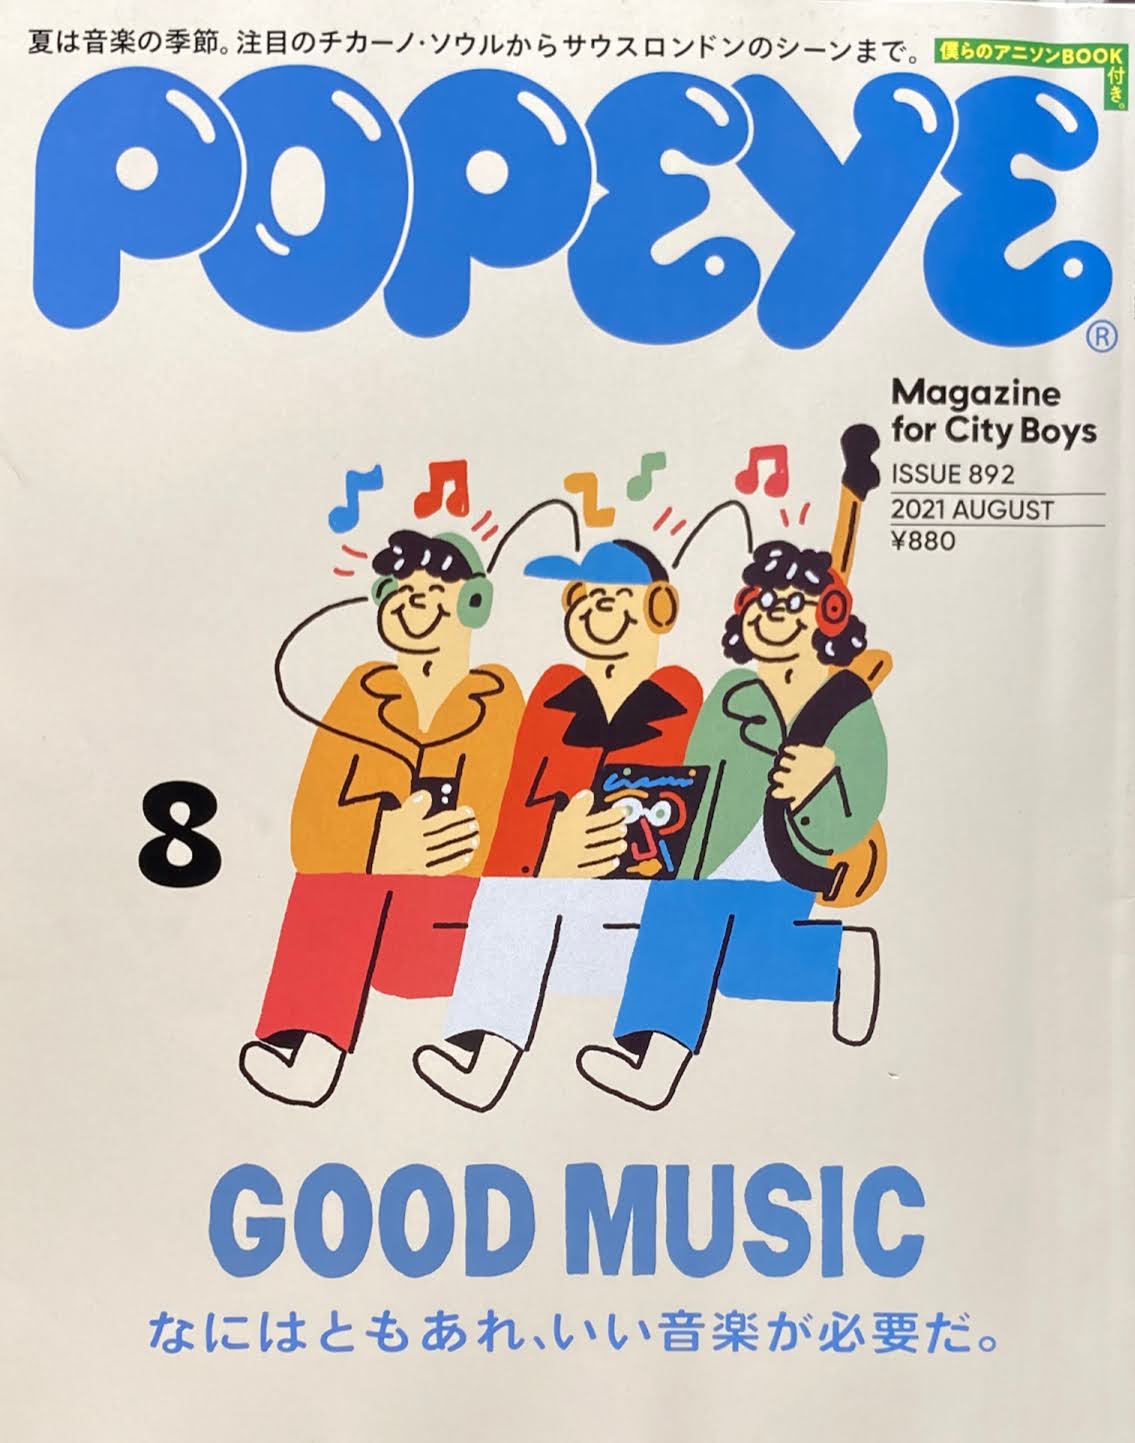 POPEYE ポパイ892 2021年8月号 なにはともあれ、いい音楽が必要だ。 – smokebooks shop